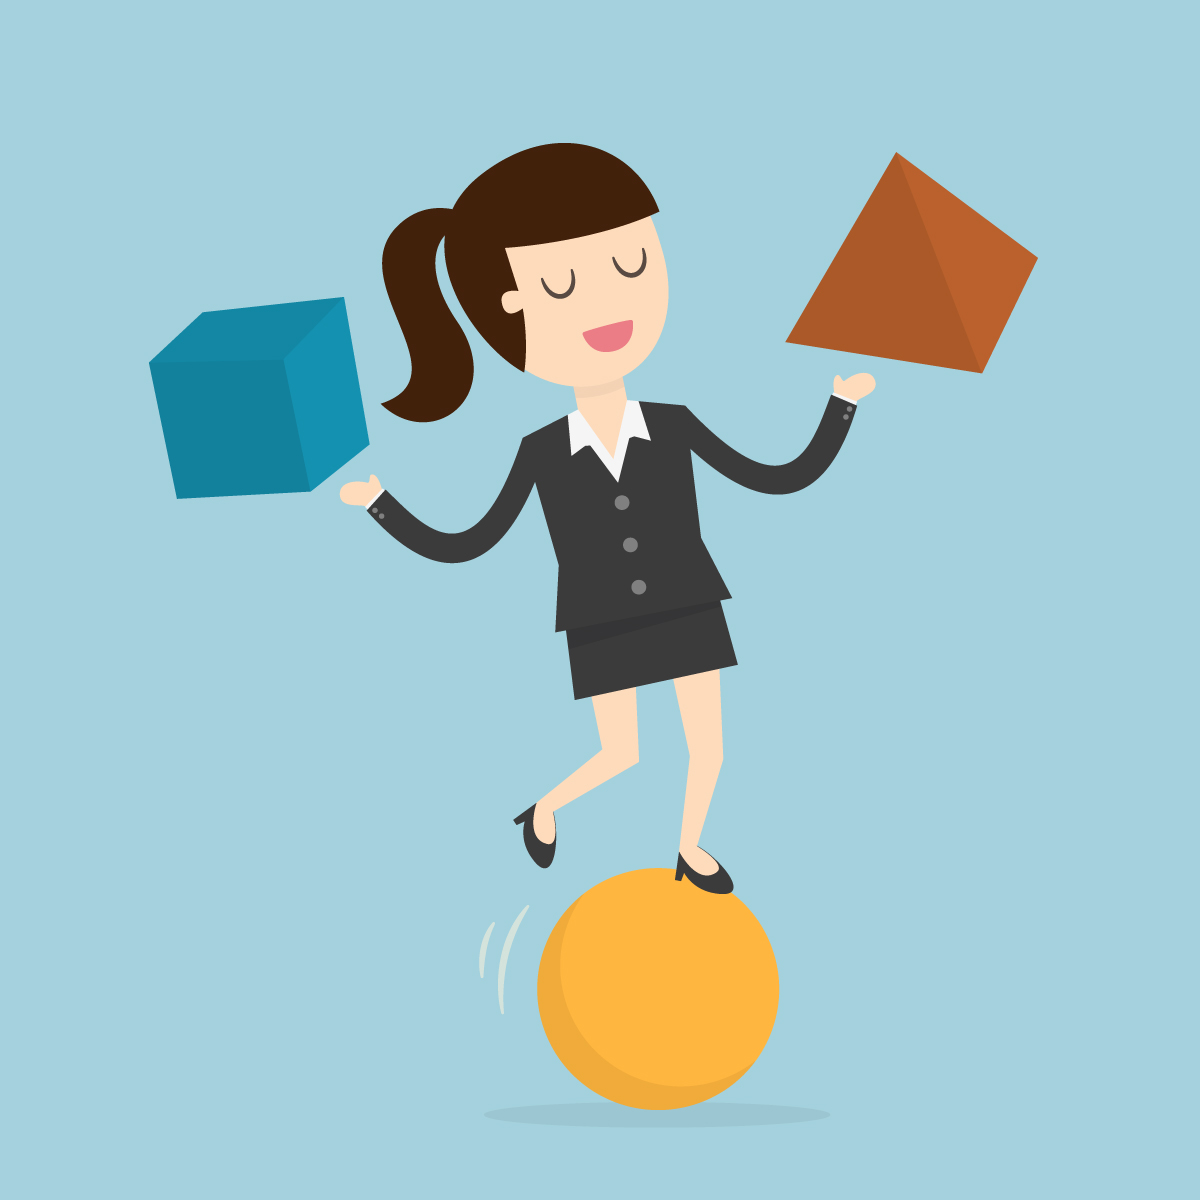 girl balances on ball to illustrate work-life balance